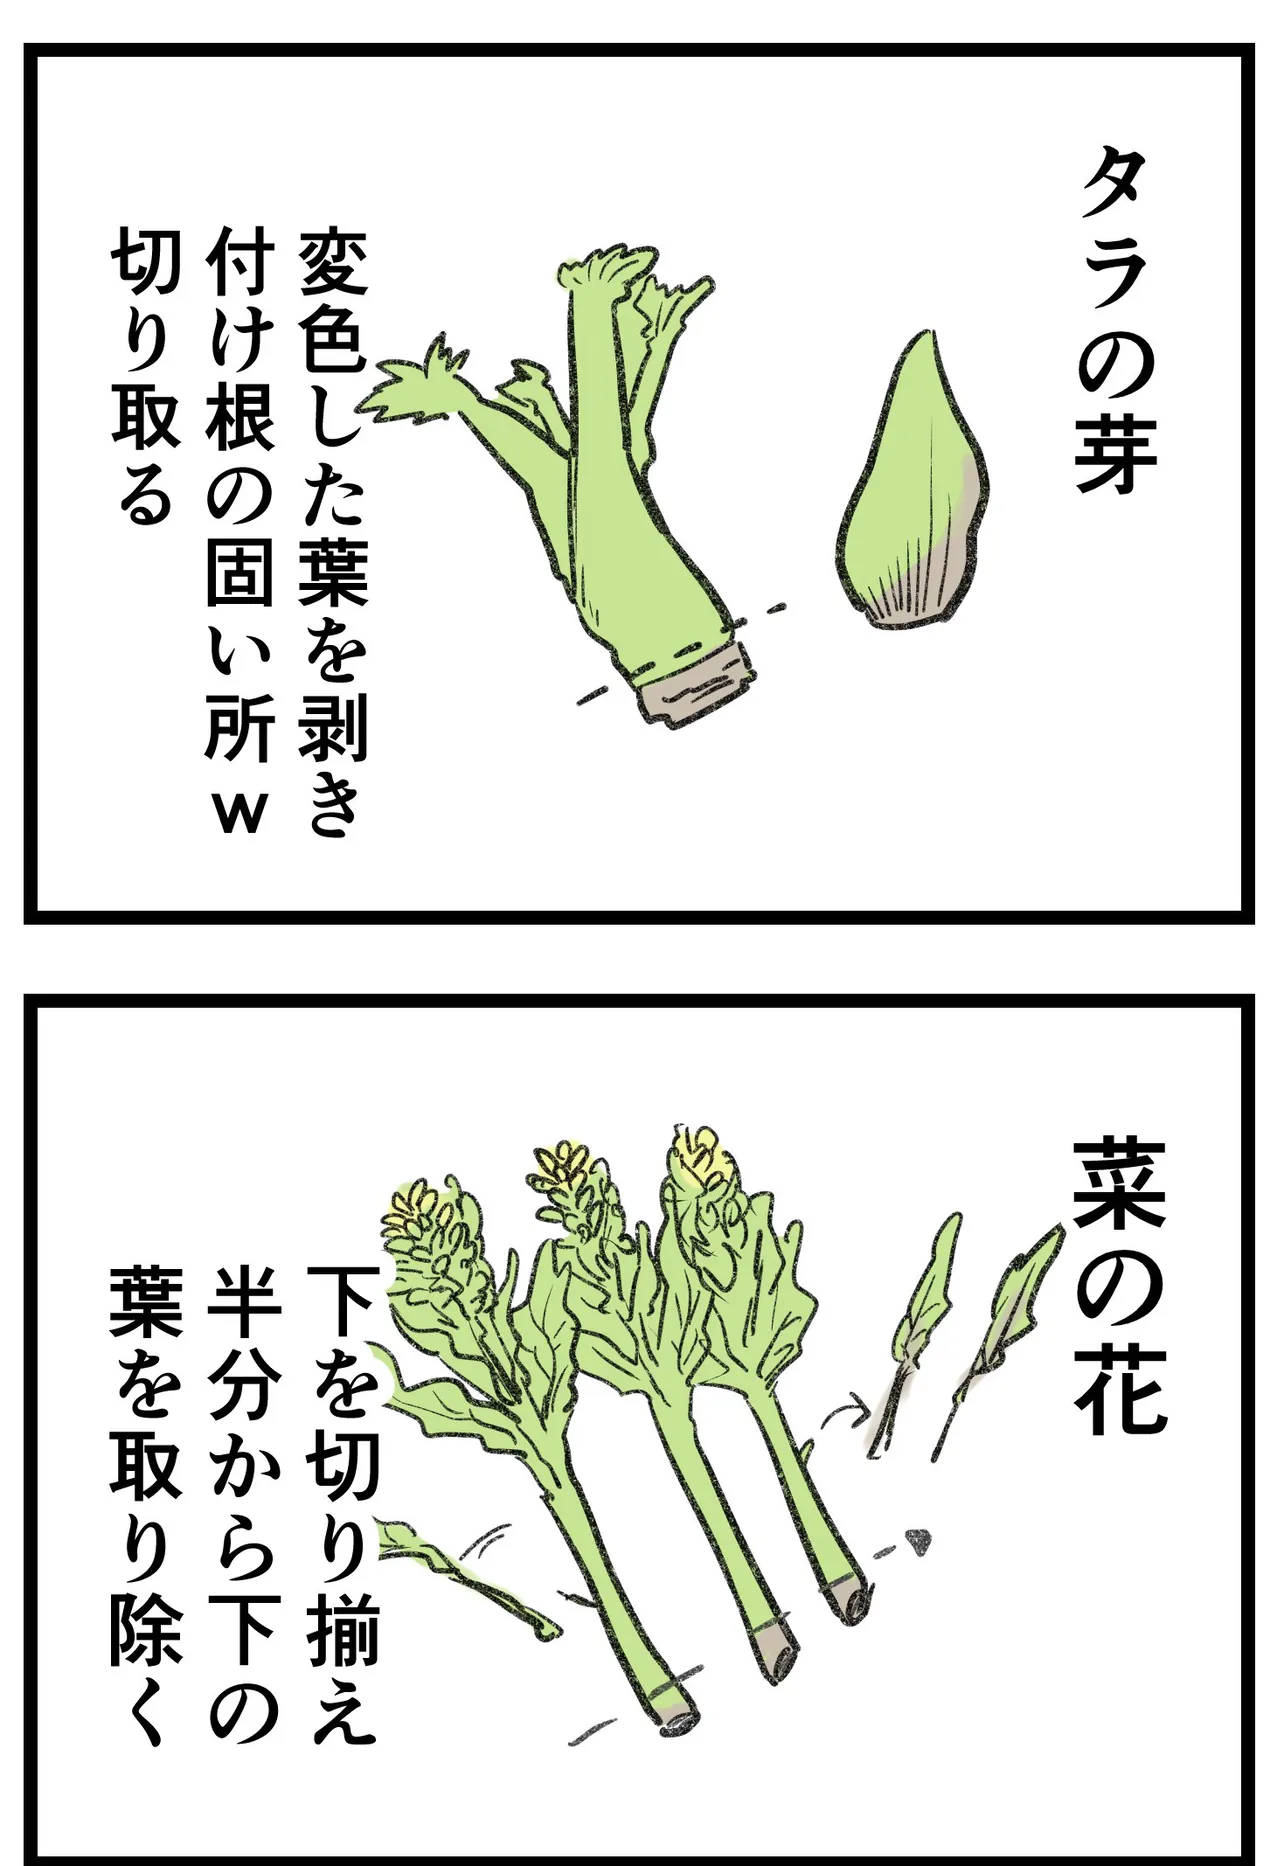 『柴犬二匹が山菜の天ぷらを作って食べる話』(5/16)